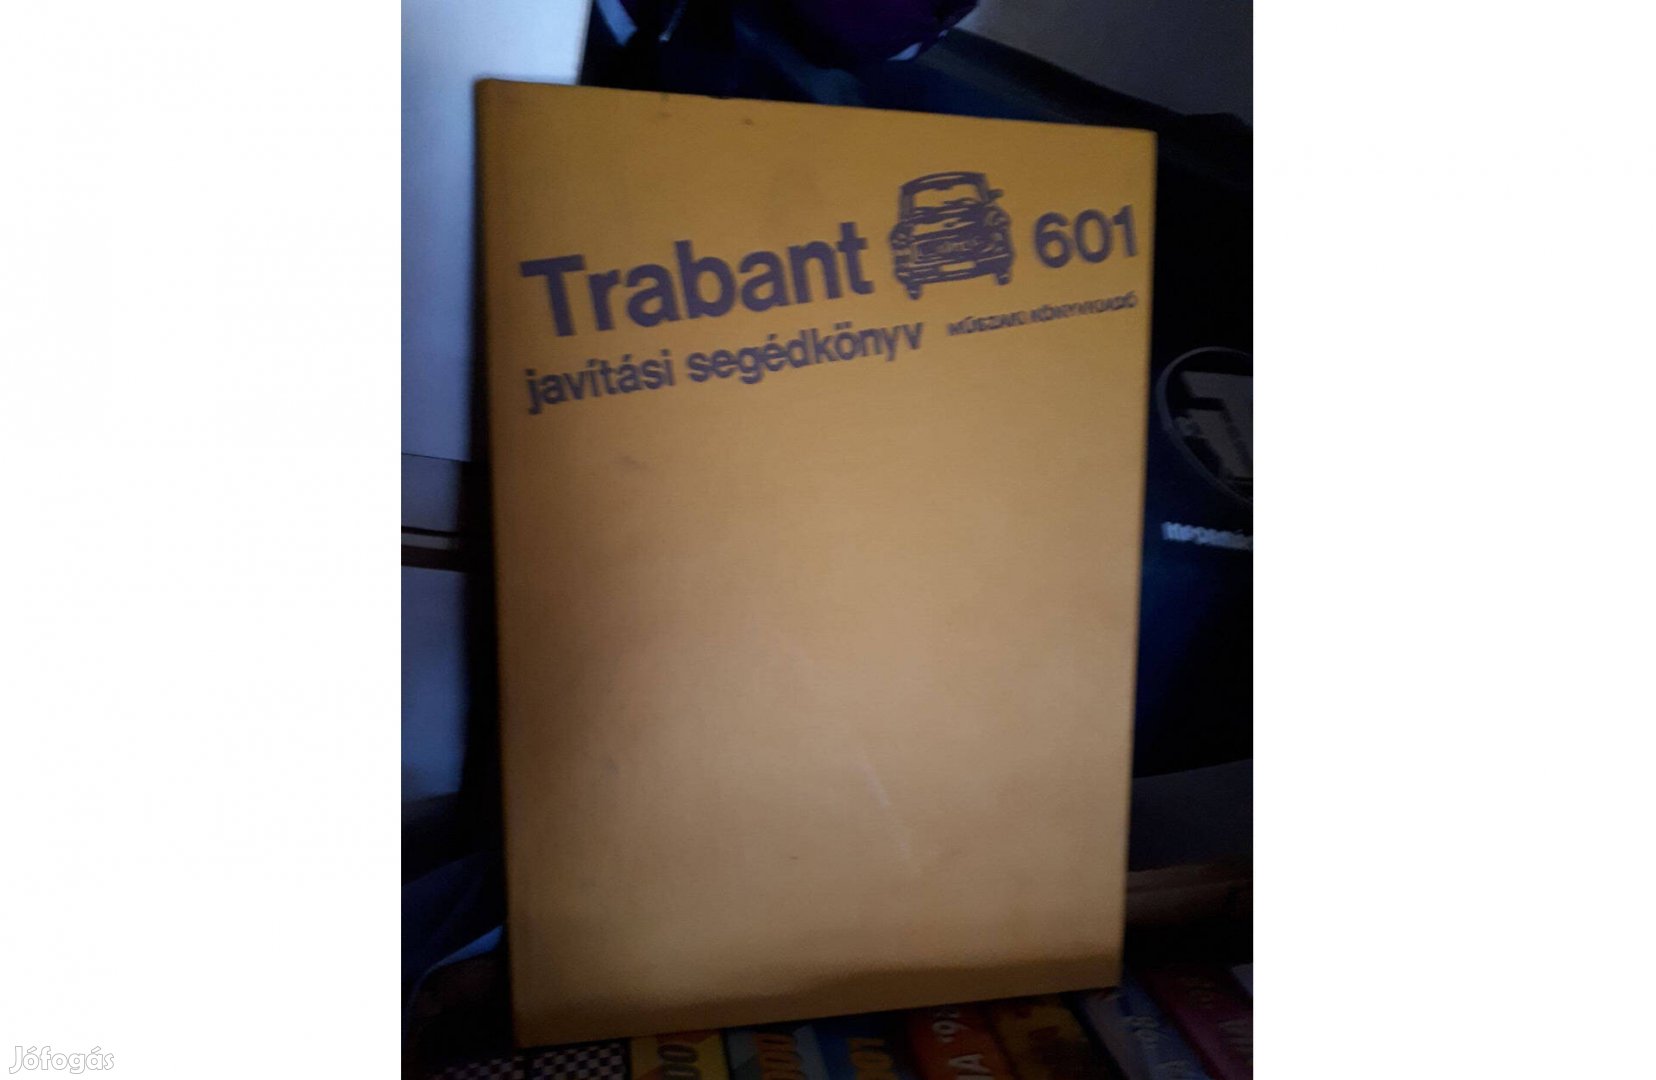 Trabant javítási kézikönyv !